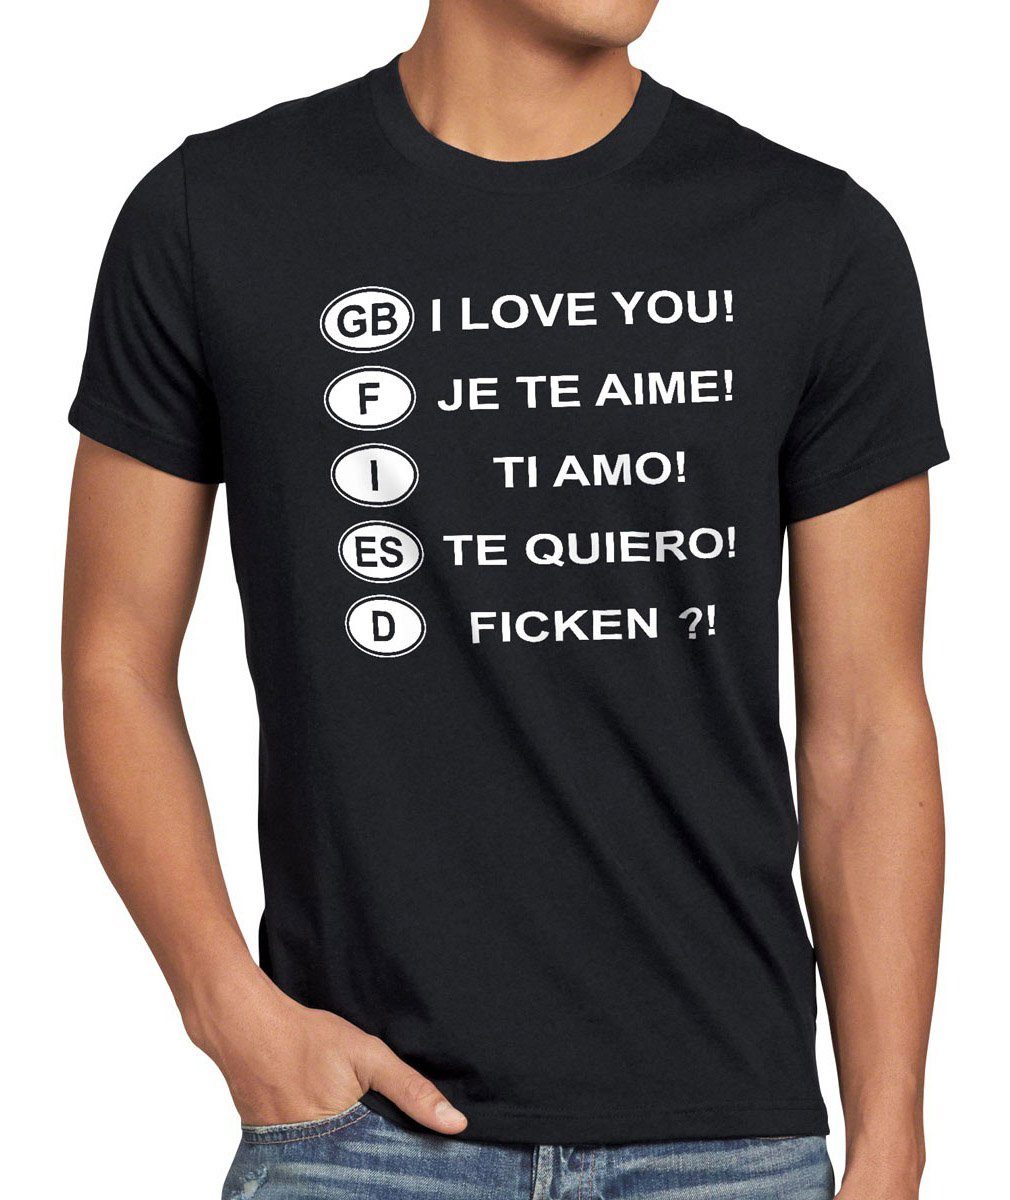 Mallorca Print-Shirt Kennzeichen Funshirt Herren Spruch Auto style3 Fun T-Shirt schwarz spass Urlaub Ficken